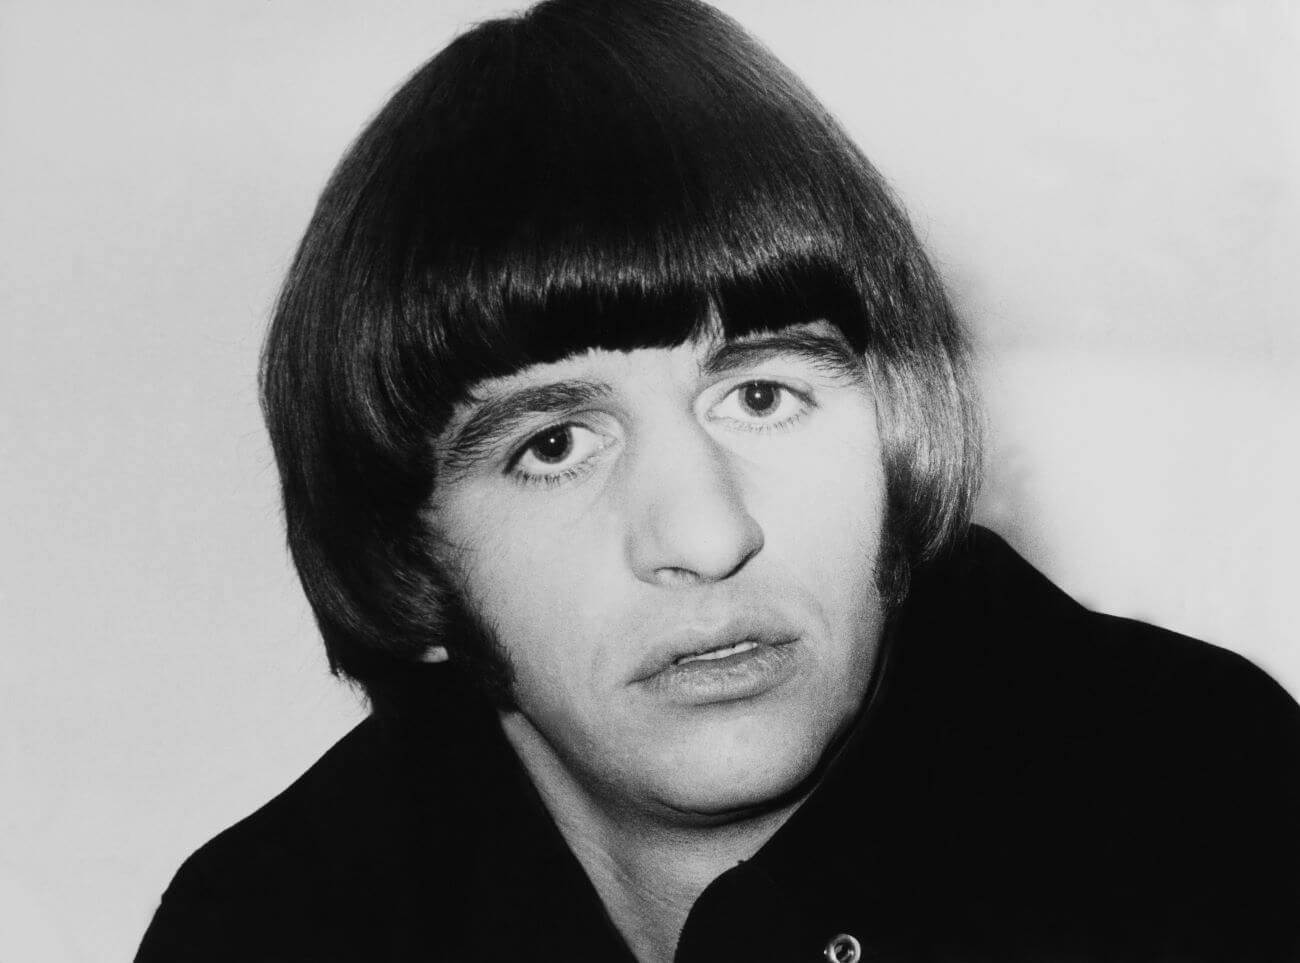 Una foto en blanco y negro de Ringo Starr de The Beatles con un abrigo.